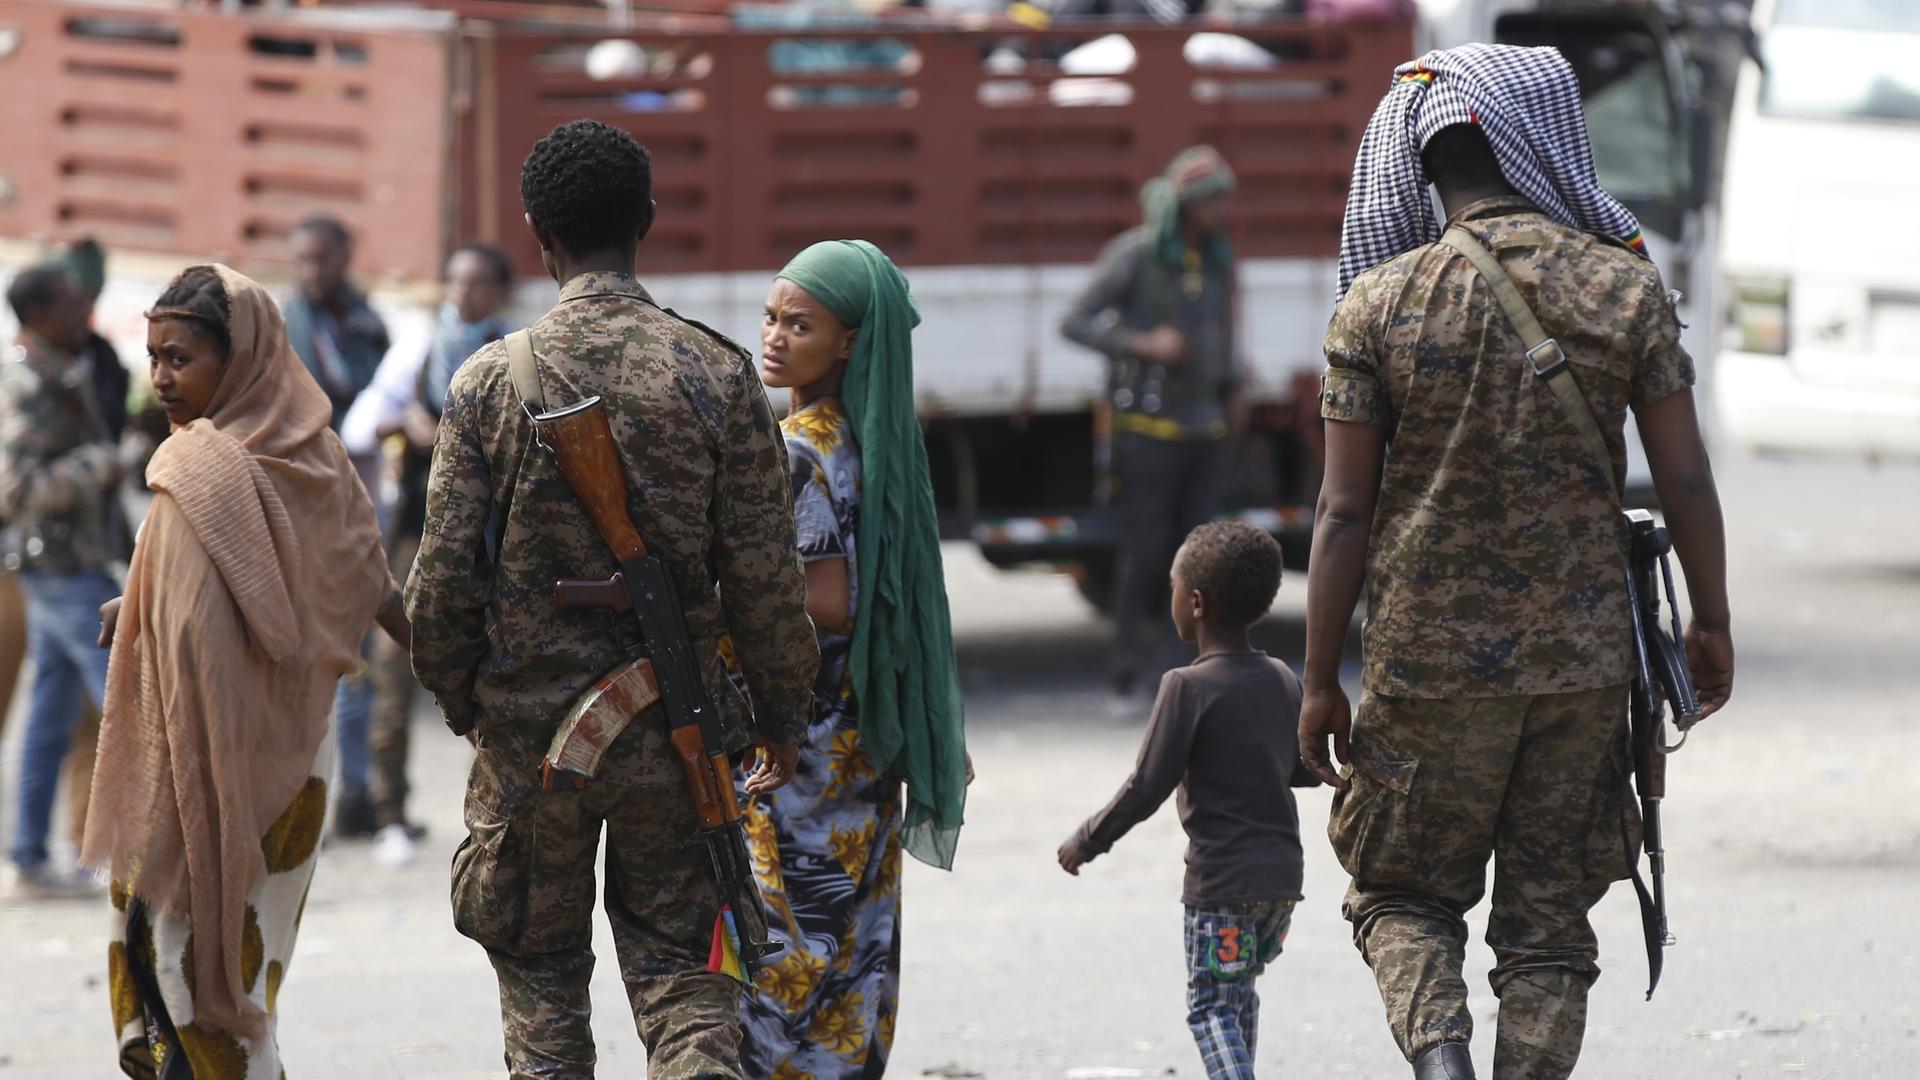 Äthiopische Militärangehörige laufen gemeinsam mit zwei Frauen und einem Kind eine Straße entlang. Eine der Frauen blickt sorgenvoll in die Kamera.